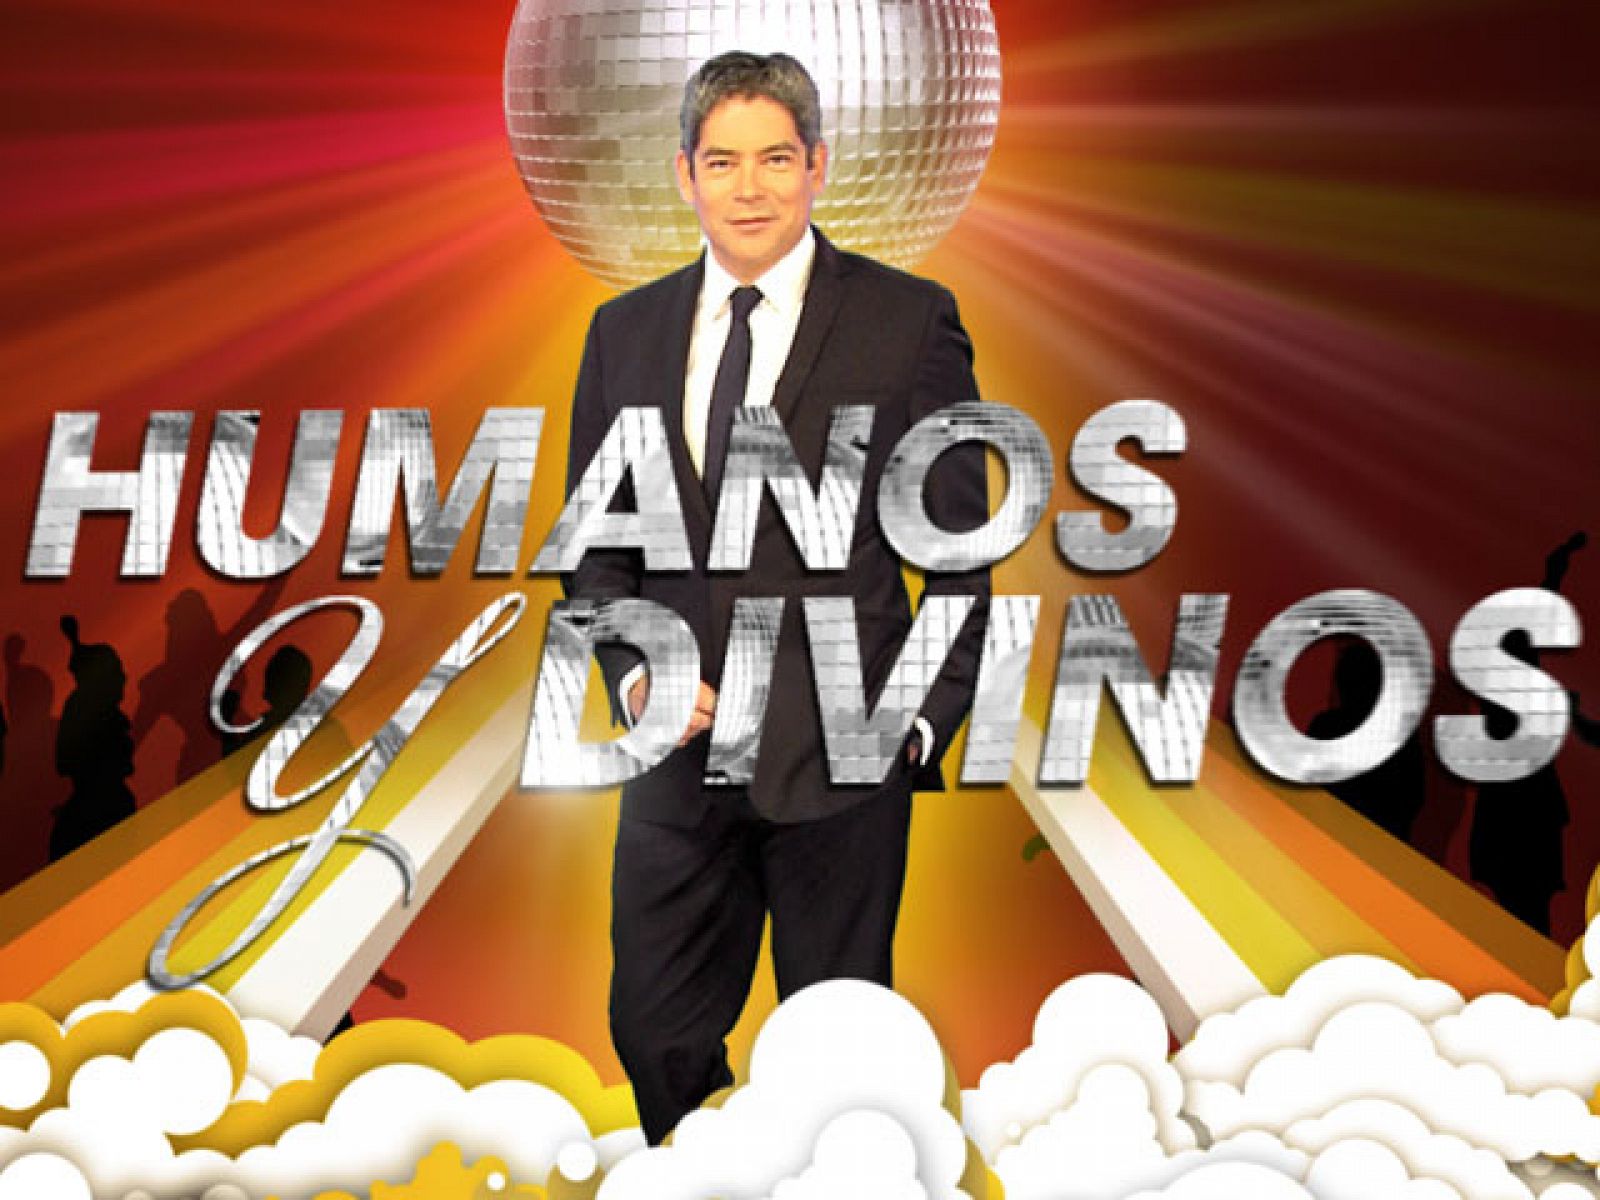 Humanos y divinos - El equipo de RTVE.es se cuela en la grabación